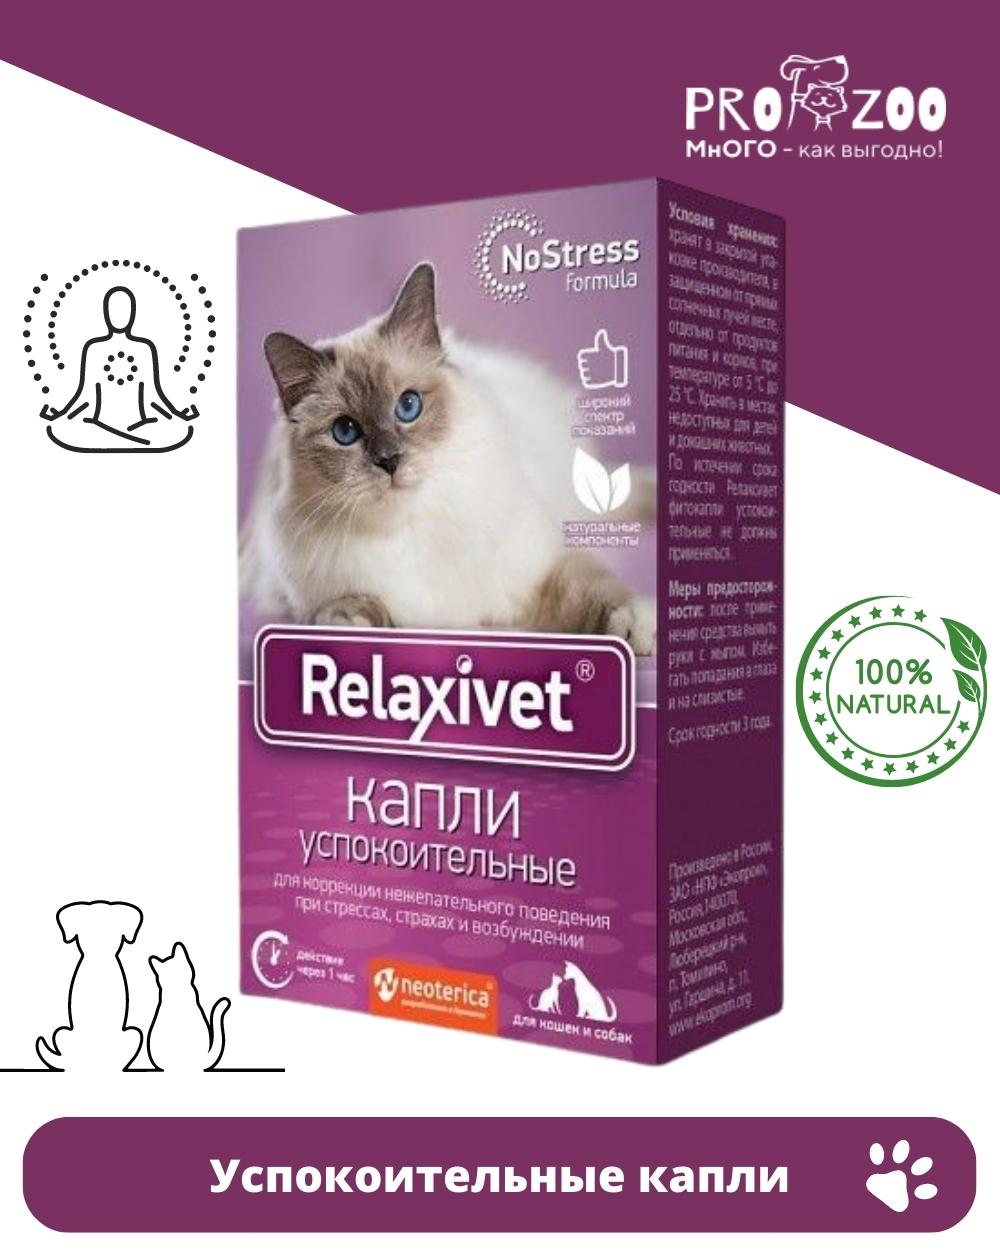 Relaxivet капли успокоительные. Релаксивет фитокапли успокоительные x103. Таблетки успокоительные Relaxivet x108 для кошек и собак, 10шт. Релаксивет для кошек цена.